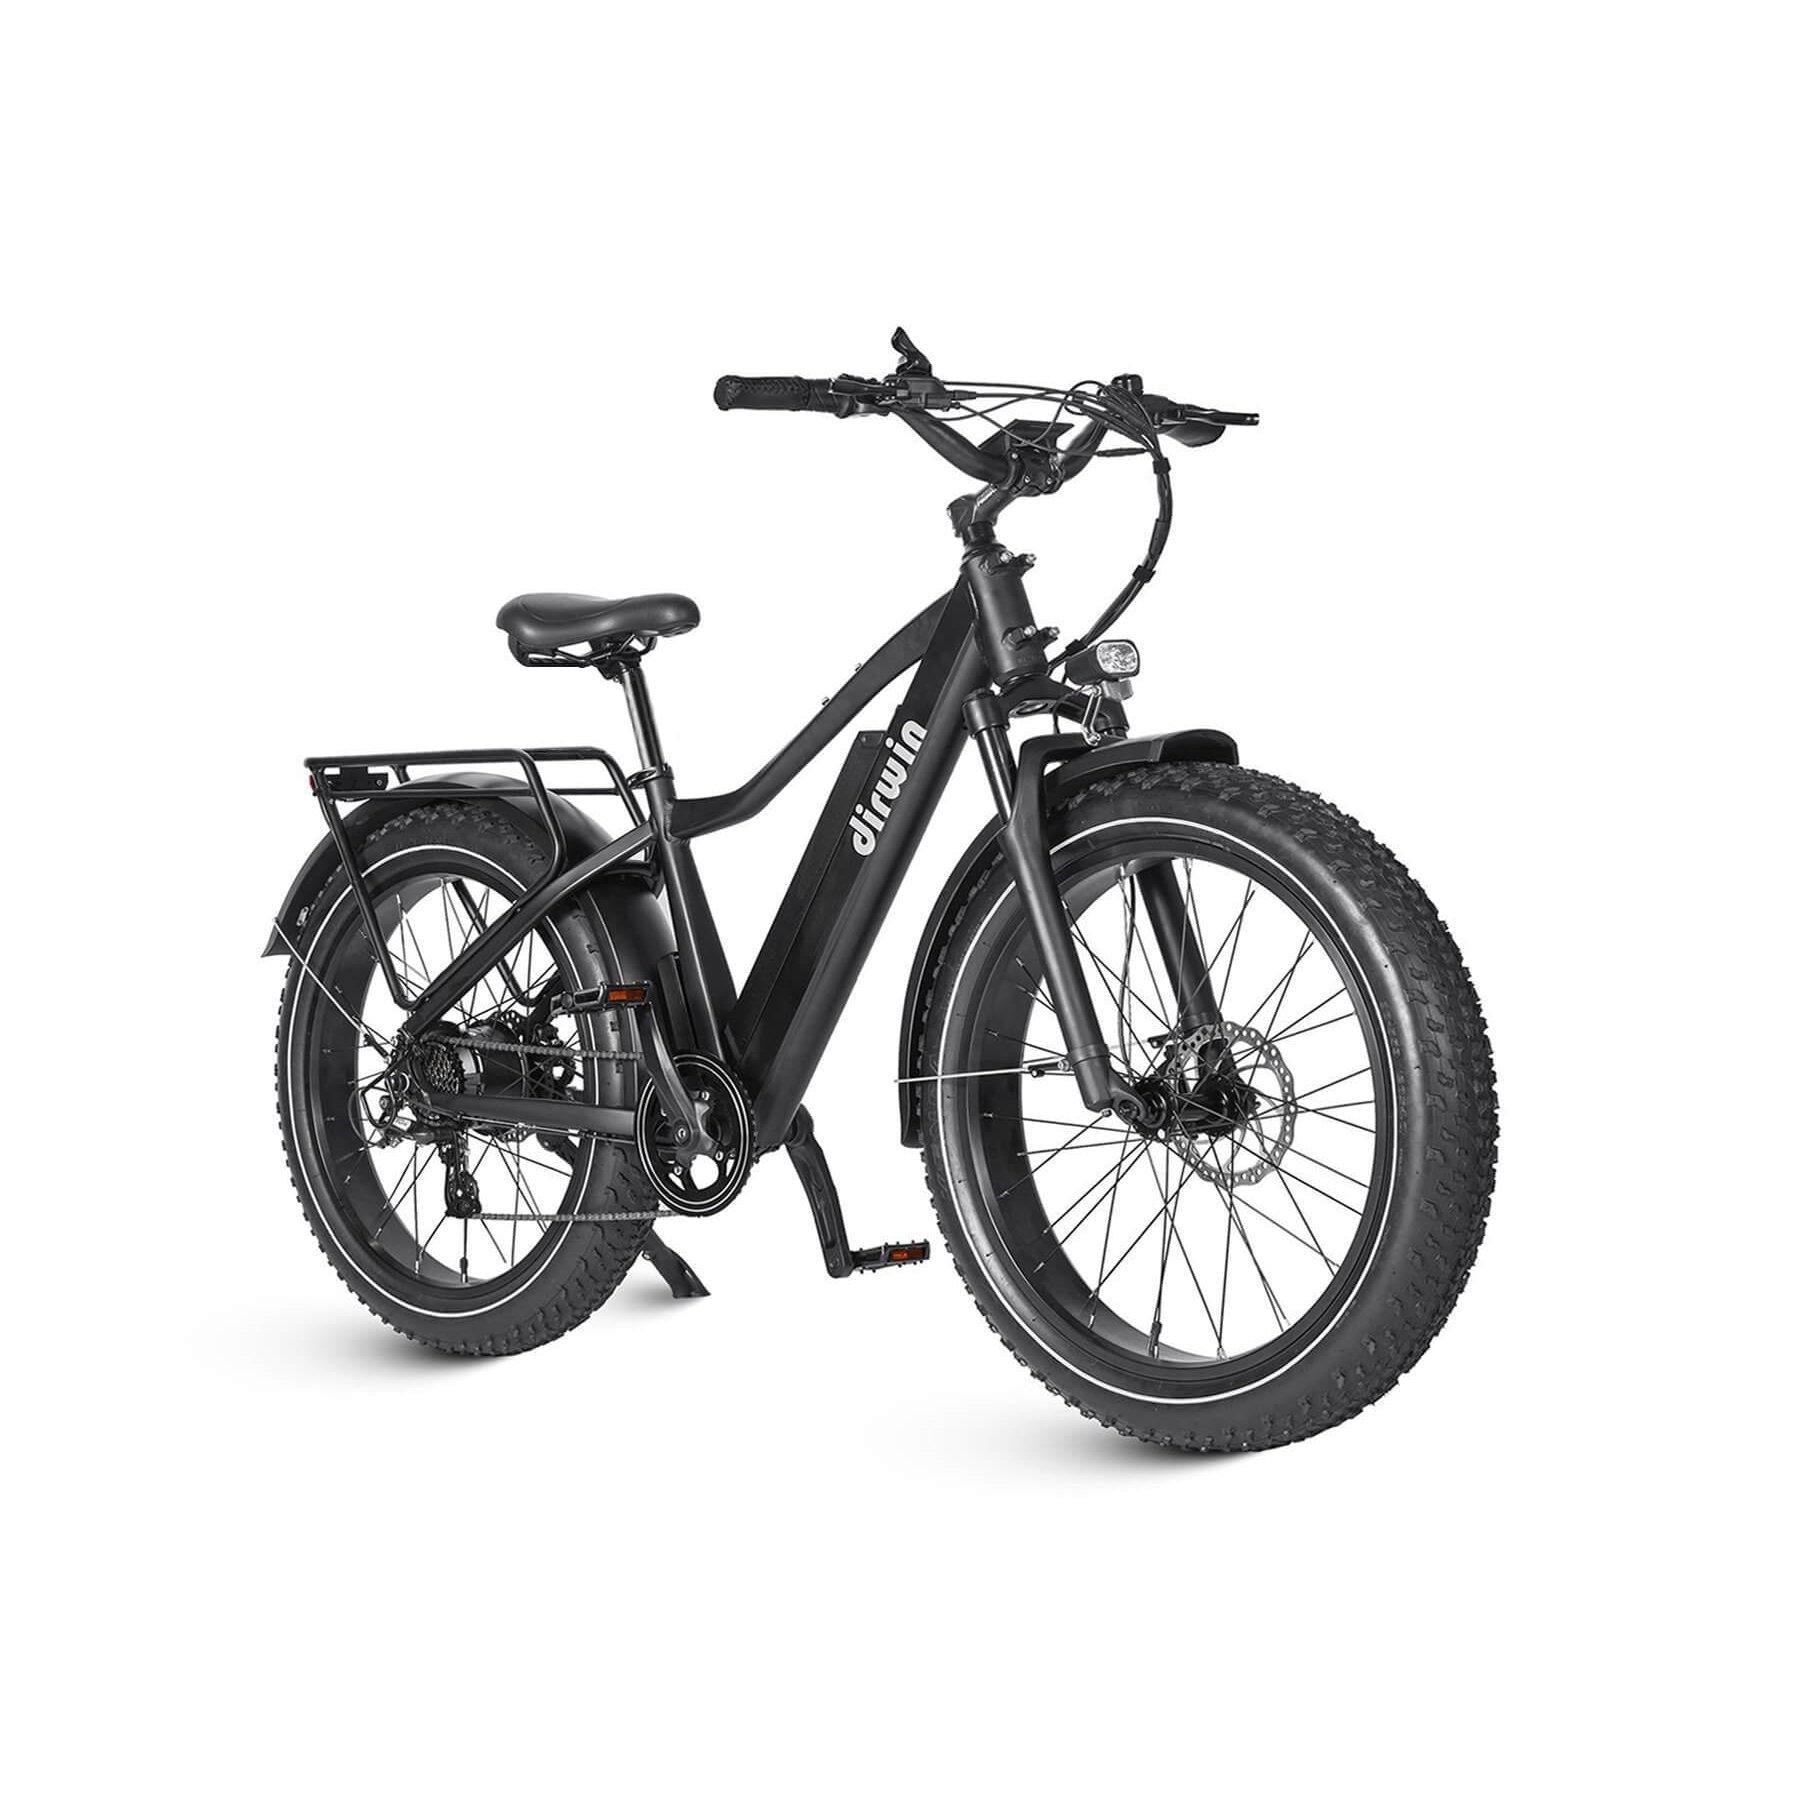 Dirwin-Seeker-750W-Fat-Tire-Electric-Bike-w-Twist-Throttle-fat-Dirwin-Bike